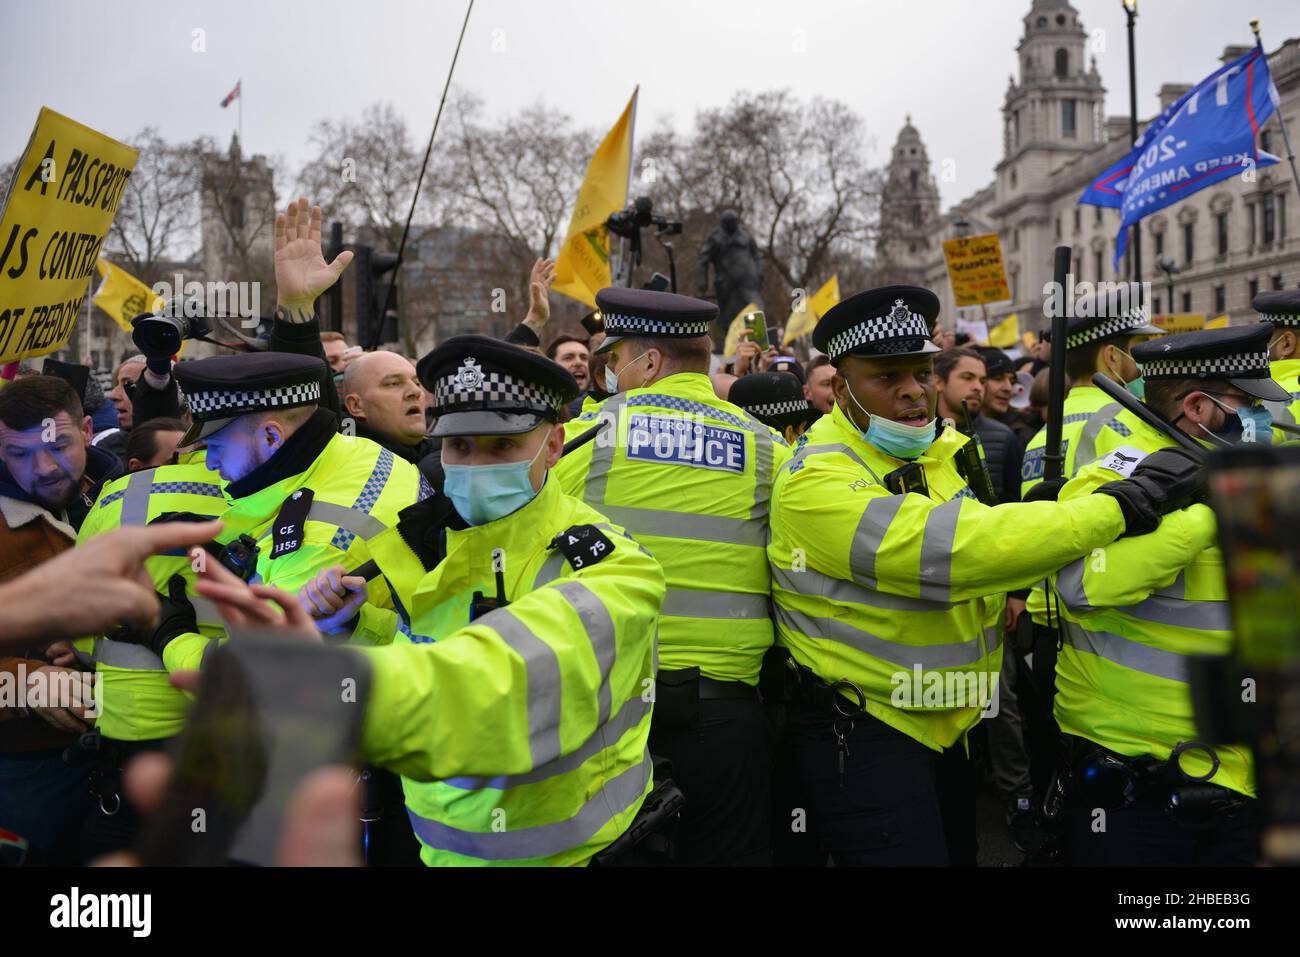 La police s'est rabatée avec des manifestants qui tentent d'empêcher un blocus de la rue, pendant la manifestation.Les manifestants anti-vaccin et anti-vaccin ont rejoint les opposants aux restrictions de Covid 19, se sont rassemblés sur la place du Parlement et ont défilé dans le centre de Londres. Banque D'Images